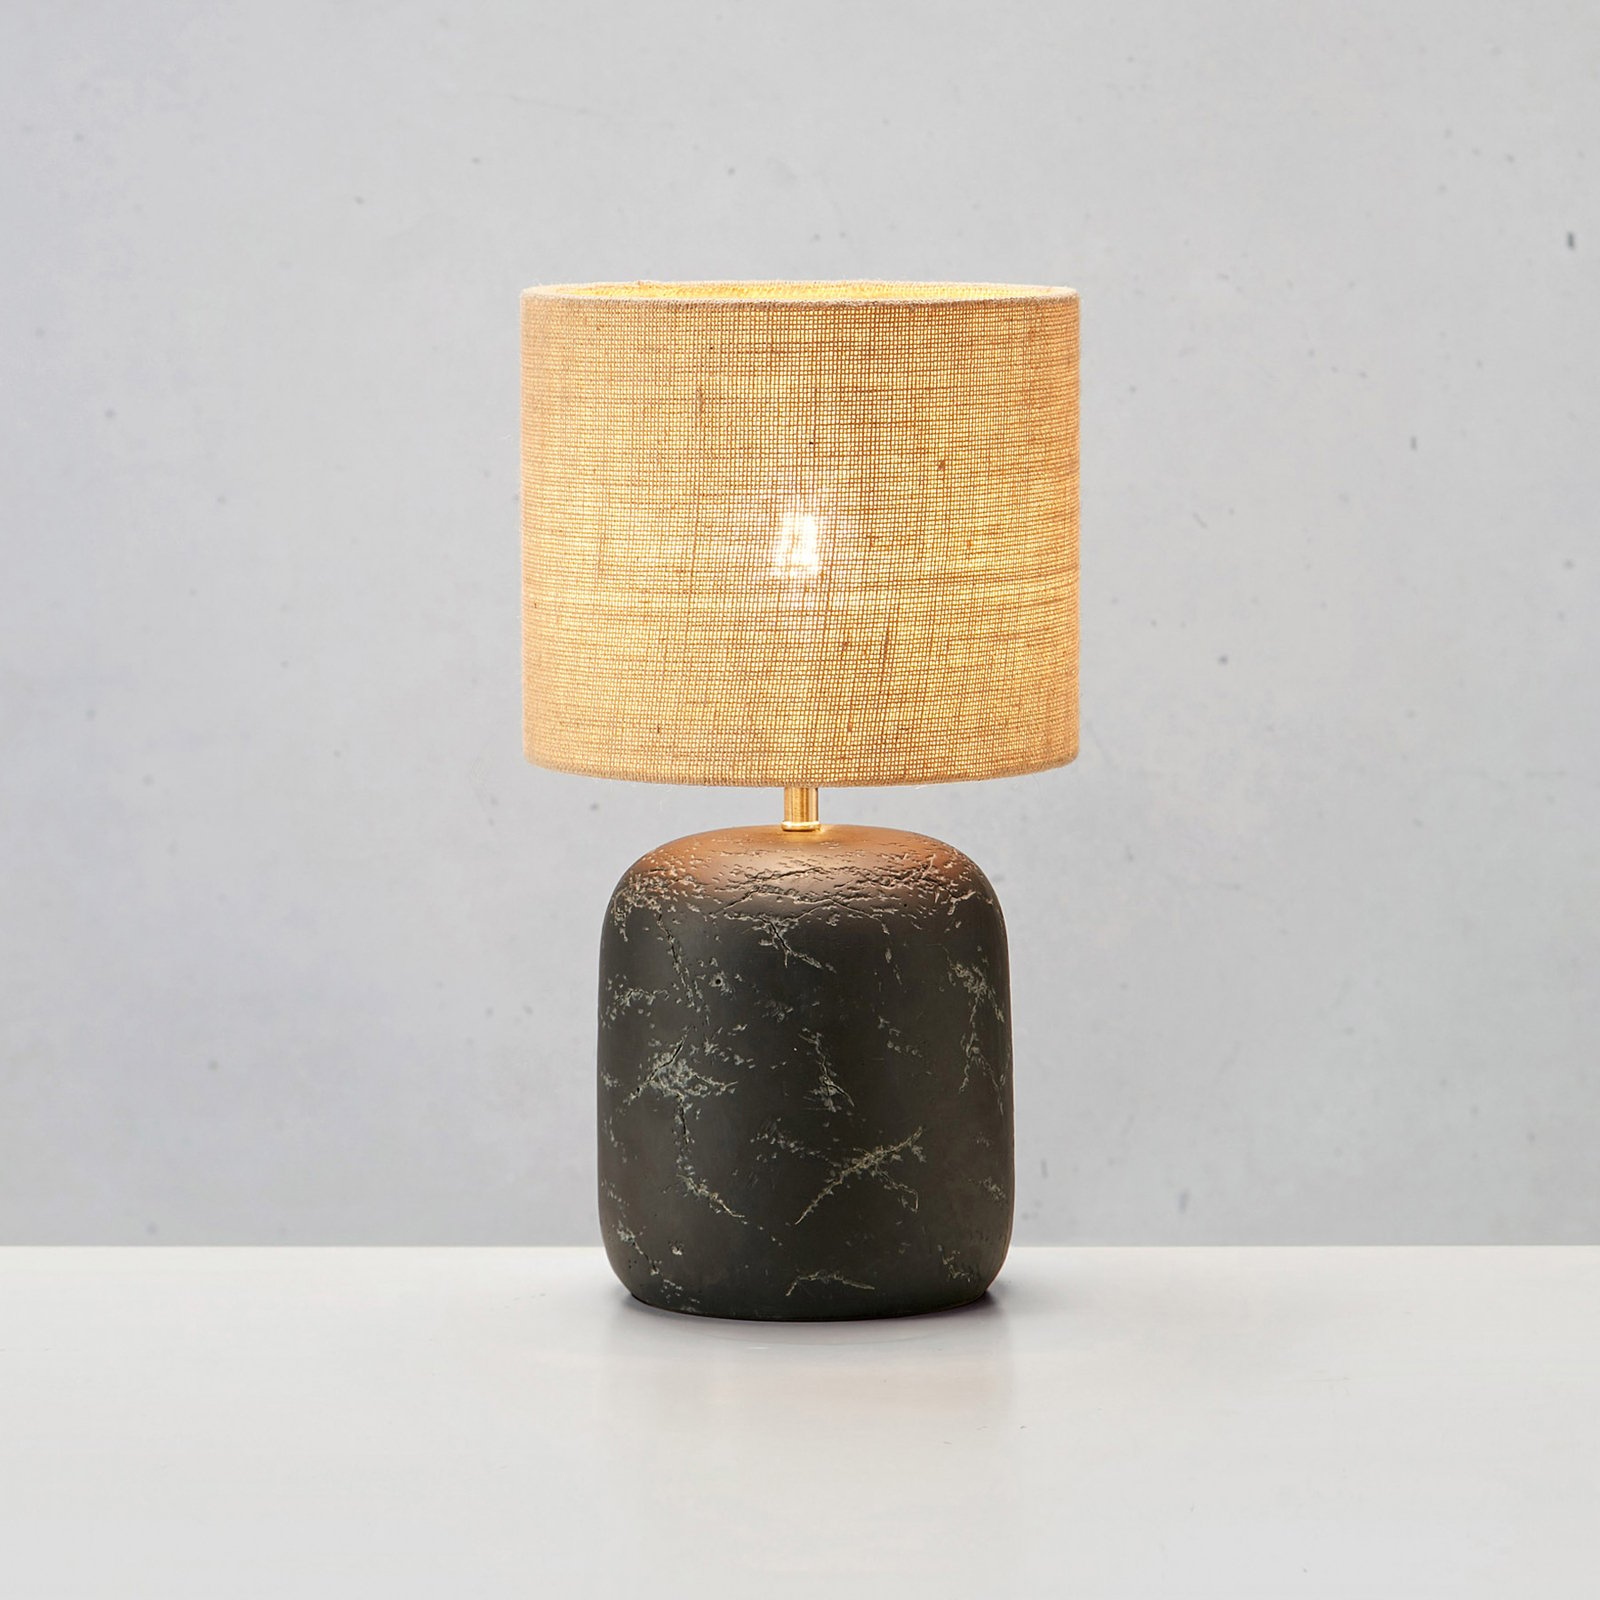 Montagna table lamp, concrete, jute, 32 cm high